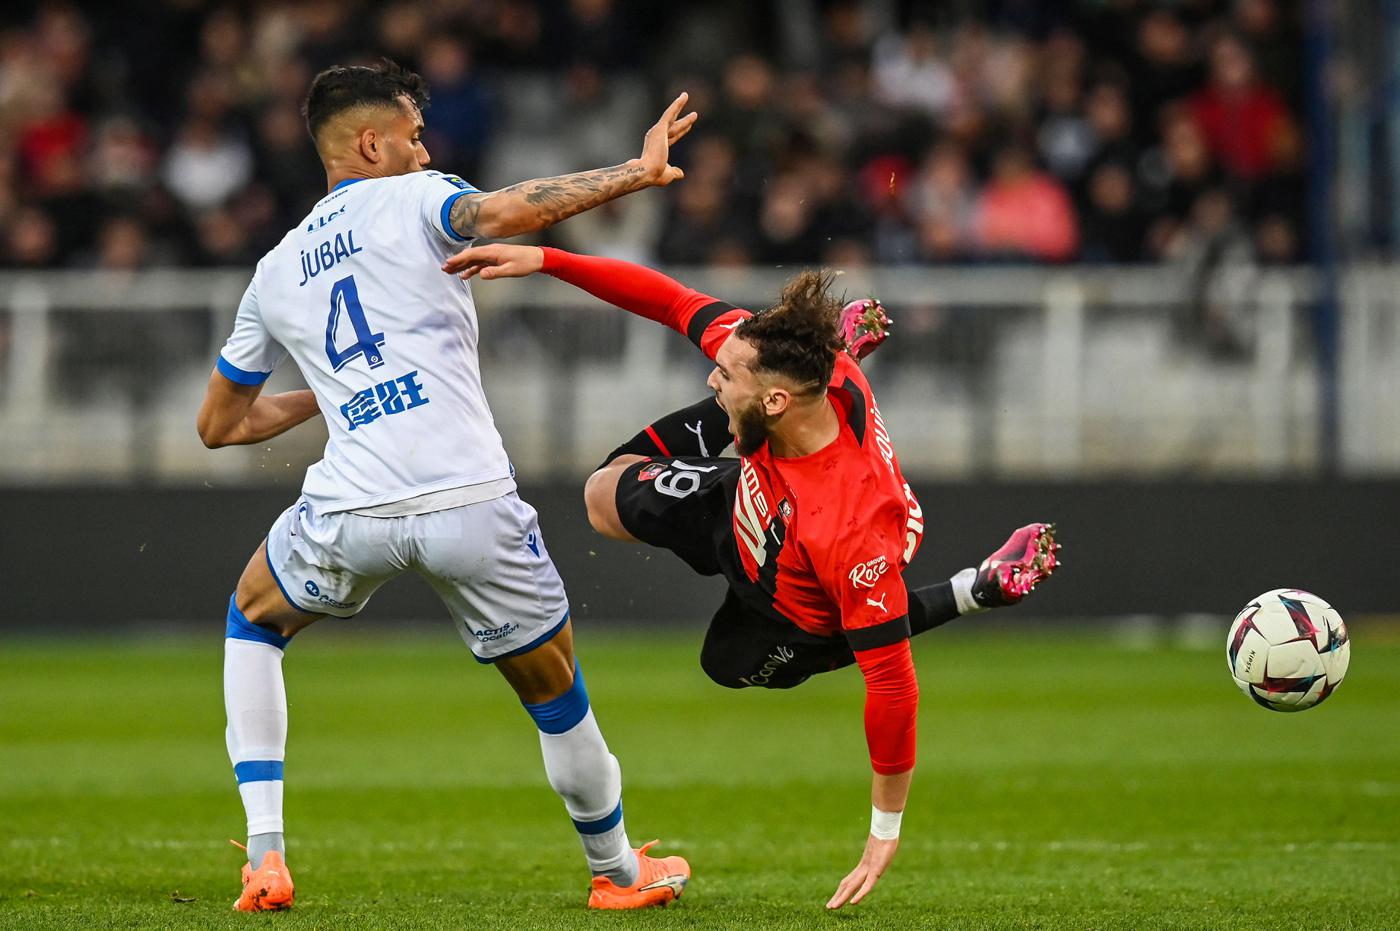 Auxerre - Rennes - 0-0. Mistrzostwa Francji, runda 27. Przegląd meczu, statystyki.